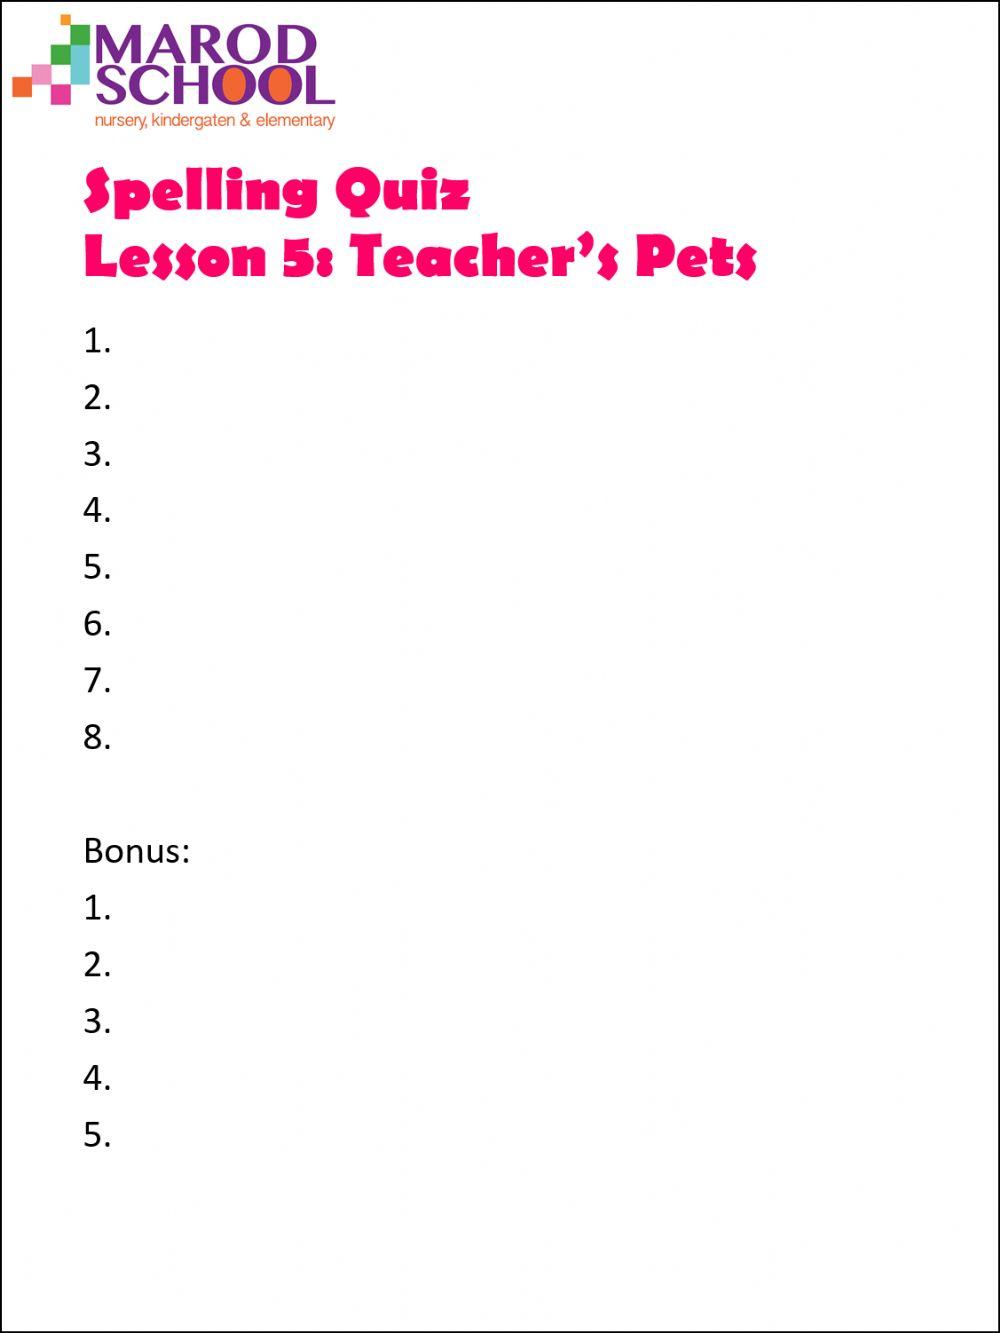 Teacher's Pets Spelling Quiz